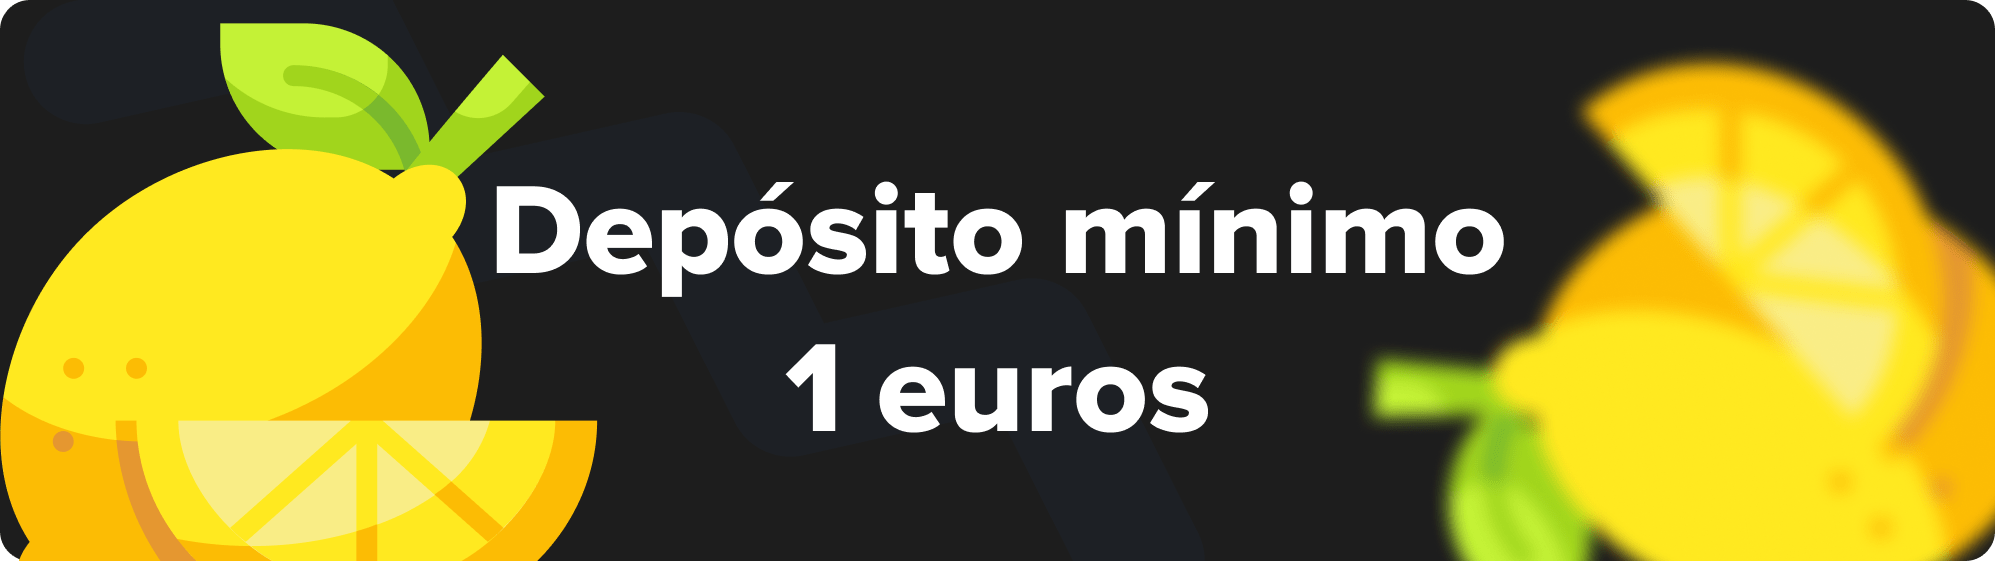 depósito-mínimo-1-euros